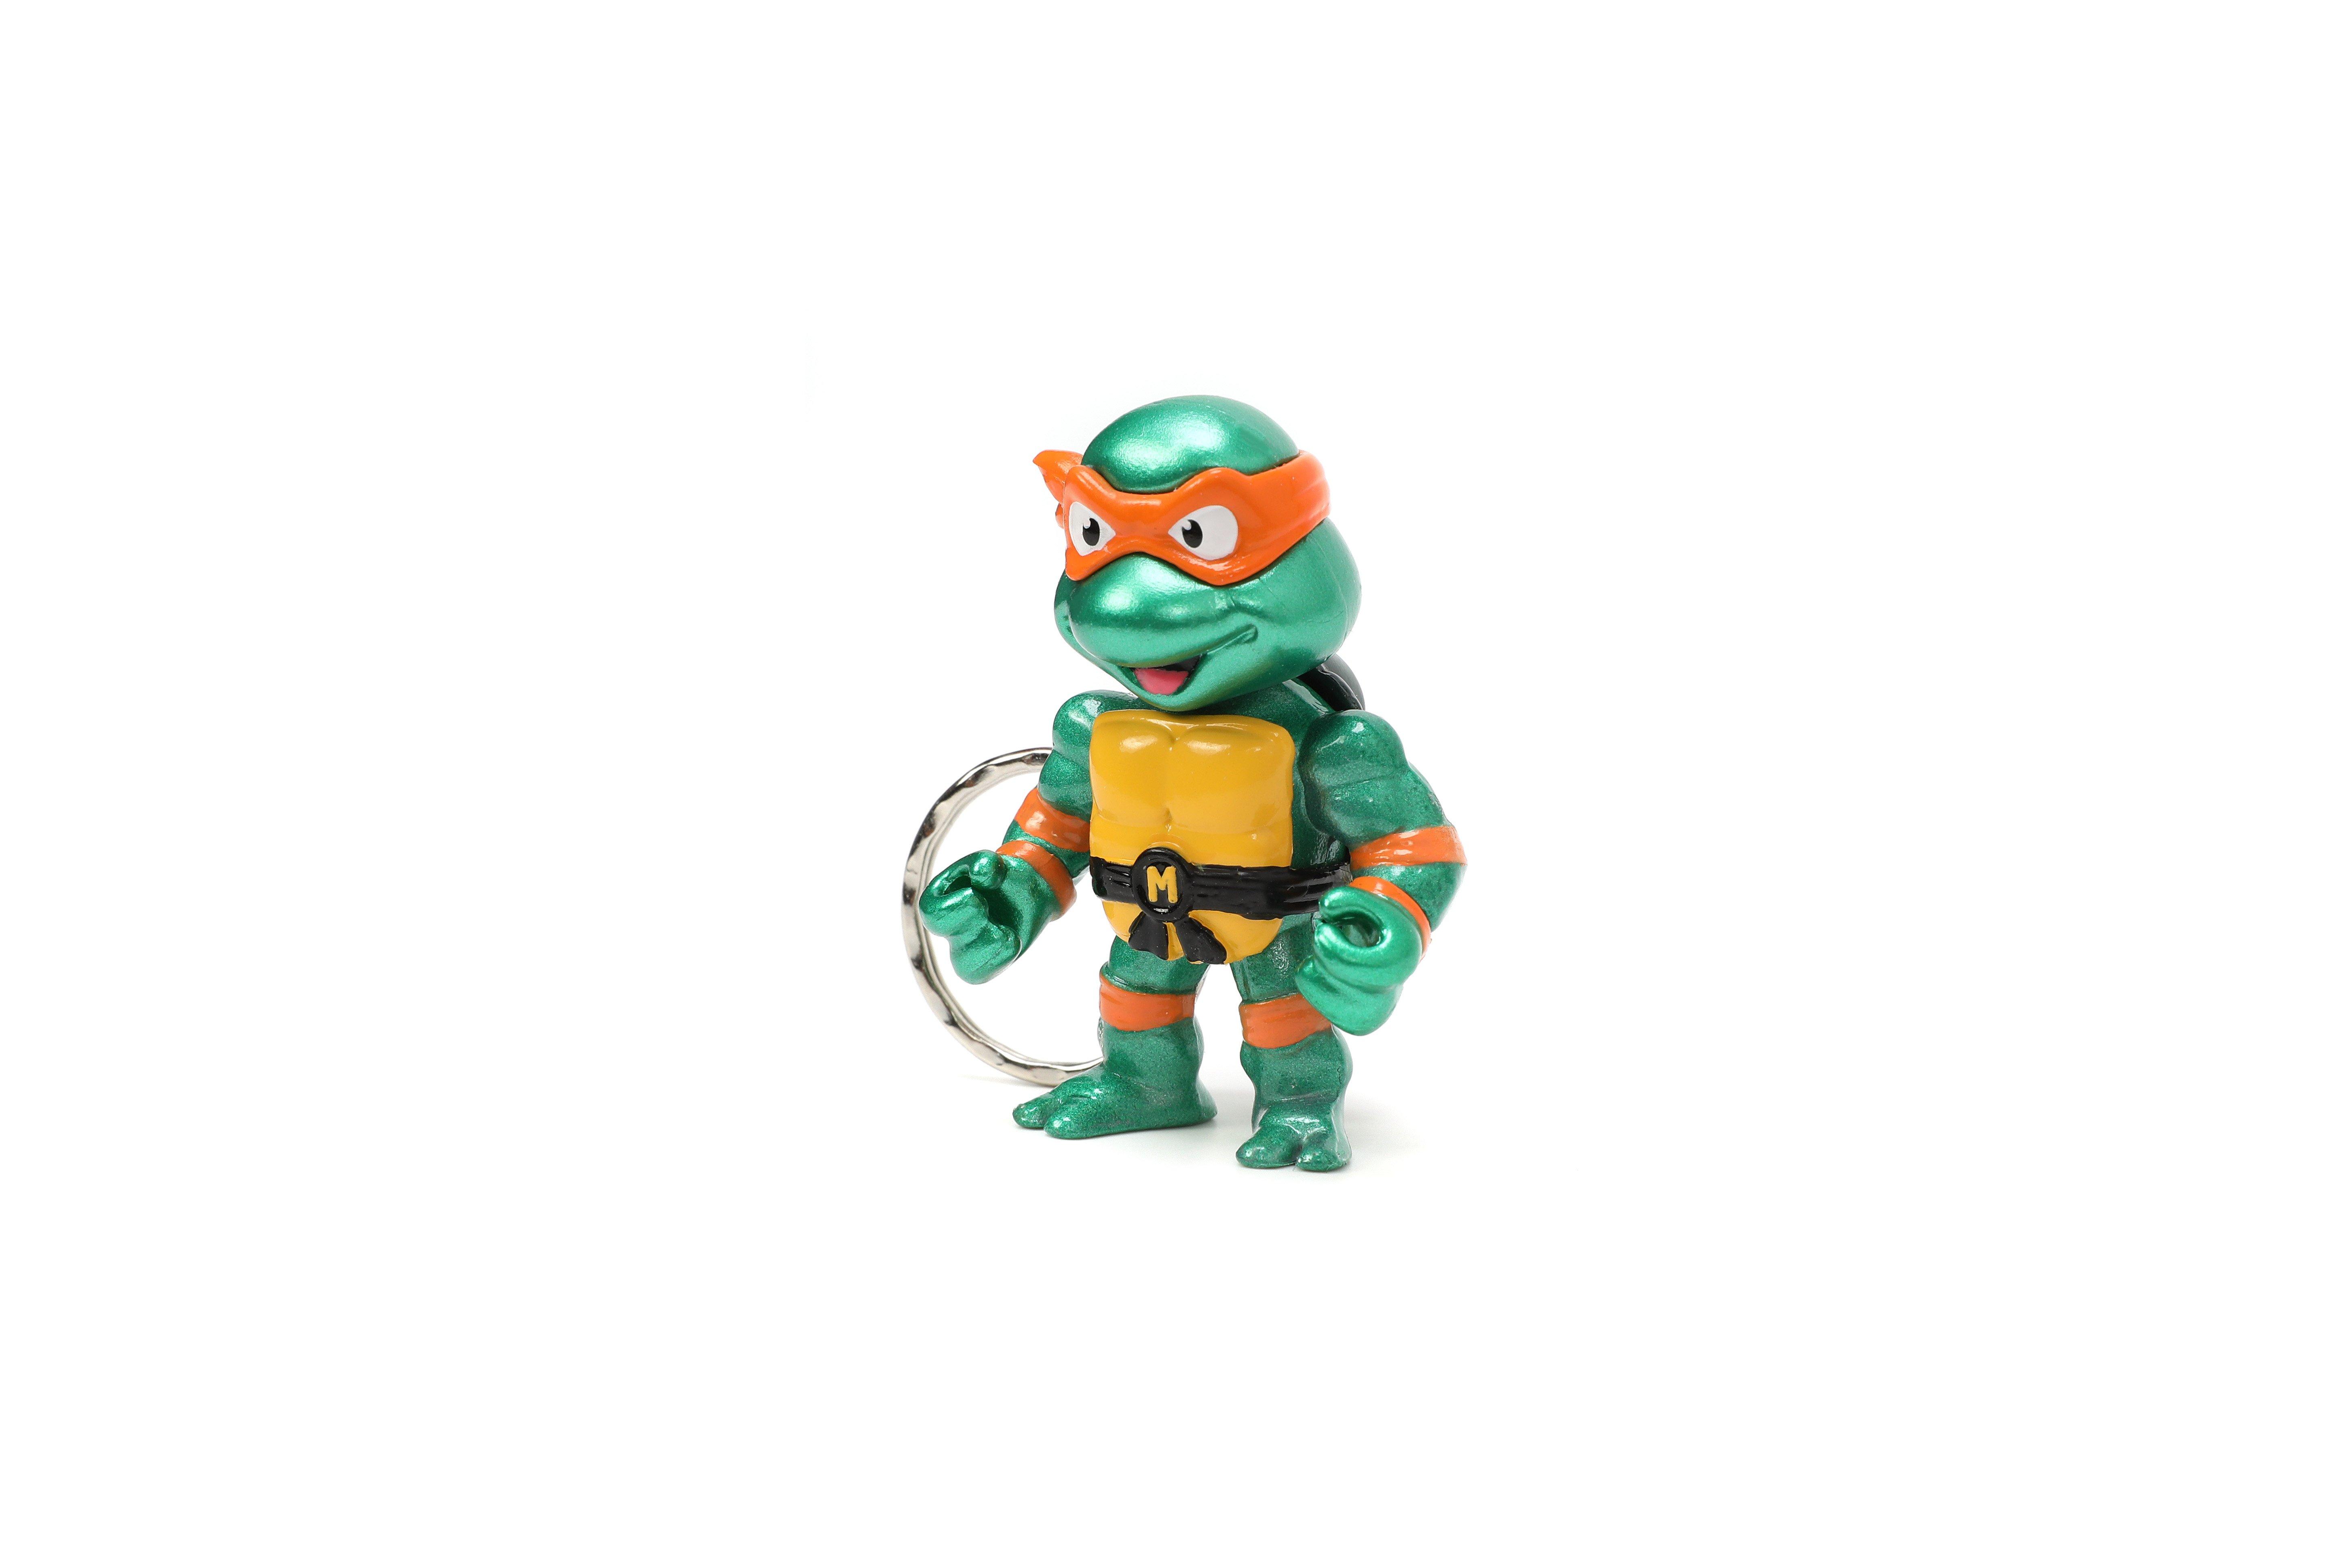 https://media.gamestop.com/i/gamestop/11186648_ALT14/Jada-Toys-Teenage-Mutant-Ninja-Turtles-2.5-in-Metalfigs-Keychain-4-Pack-GameStop-Exclusive?$pdp$